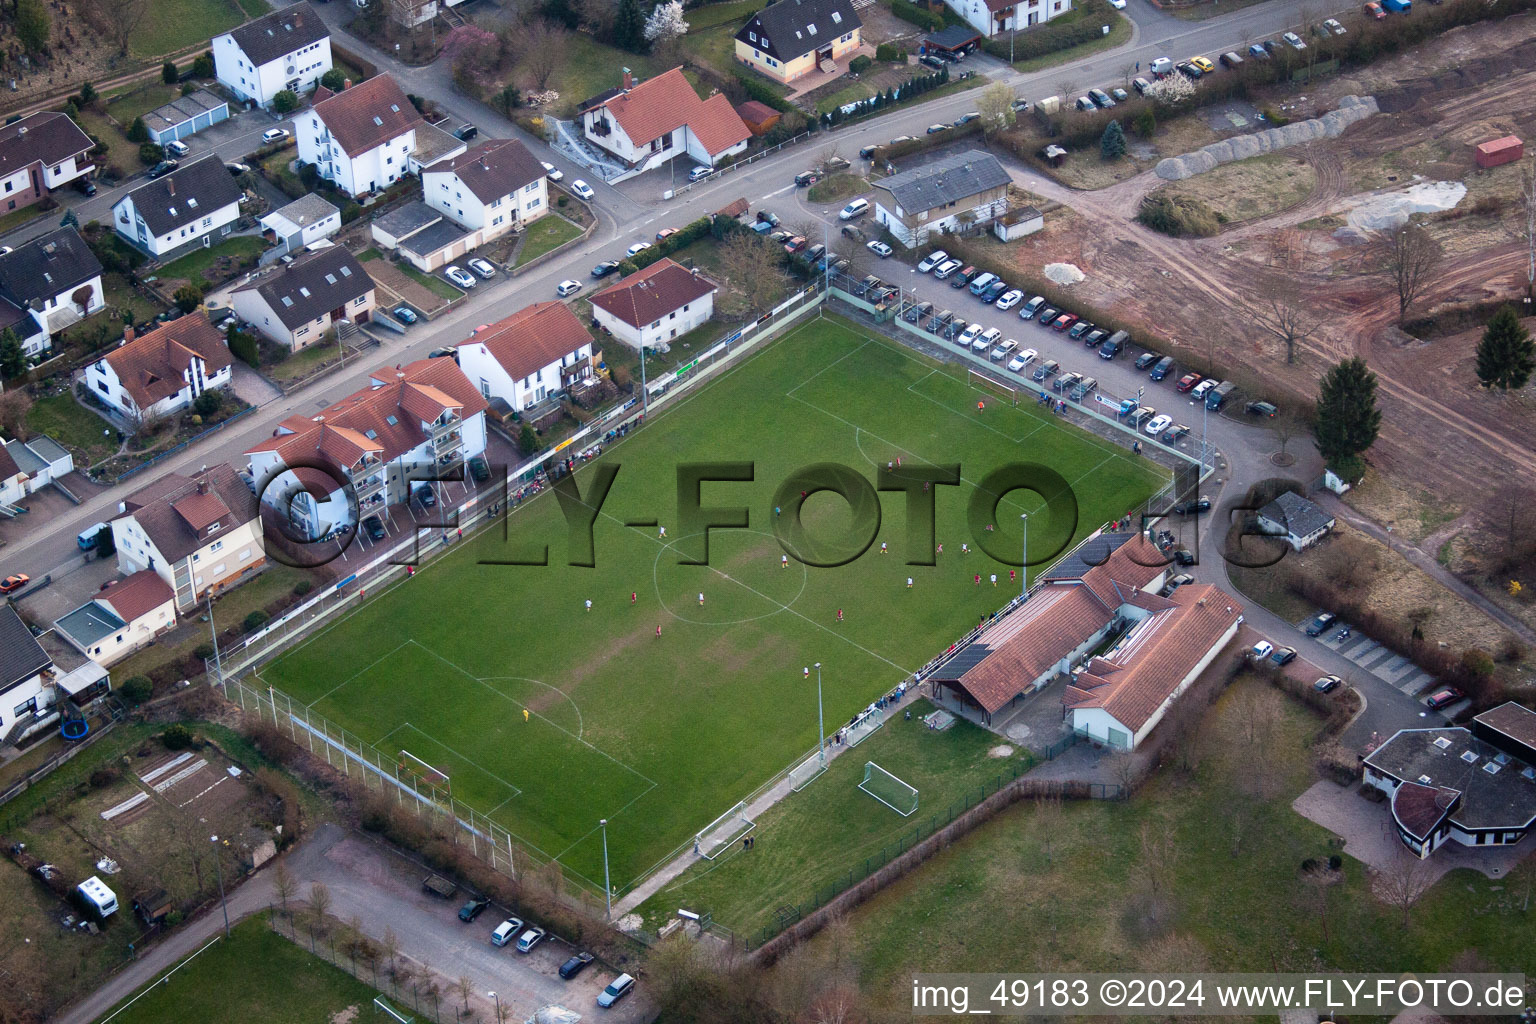 Terrains de sport à le quartier Ingenheim in Billigheim-Ingenheim dans le département Rhénanie-Palatinat, Allemagne hors des airs